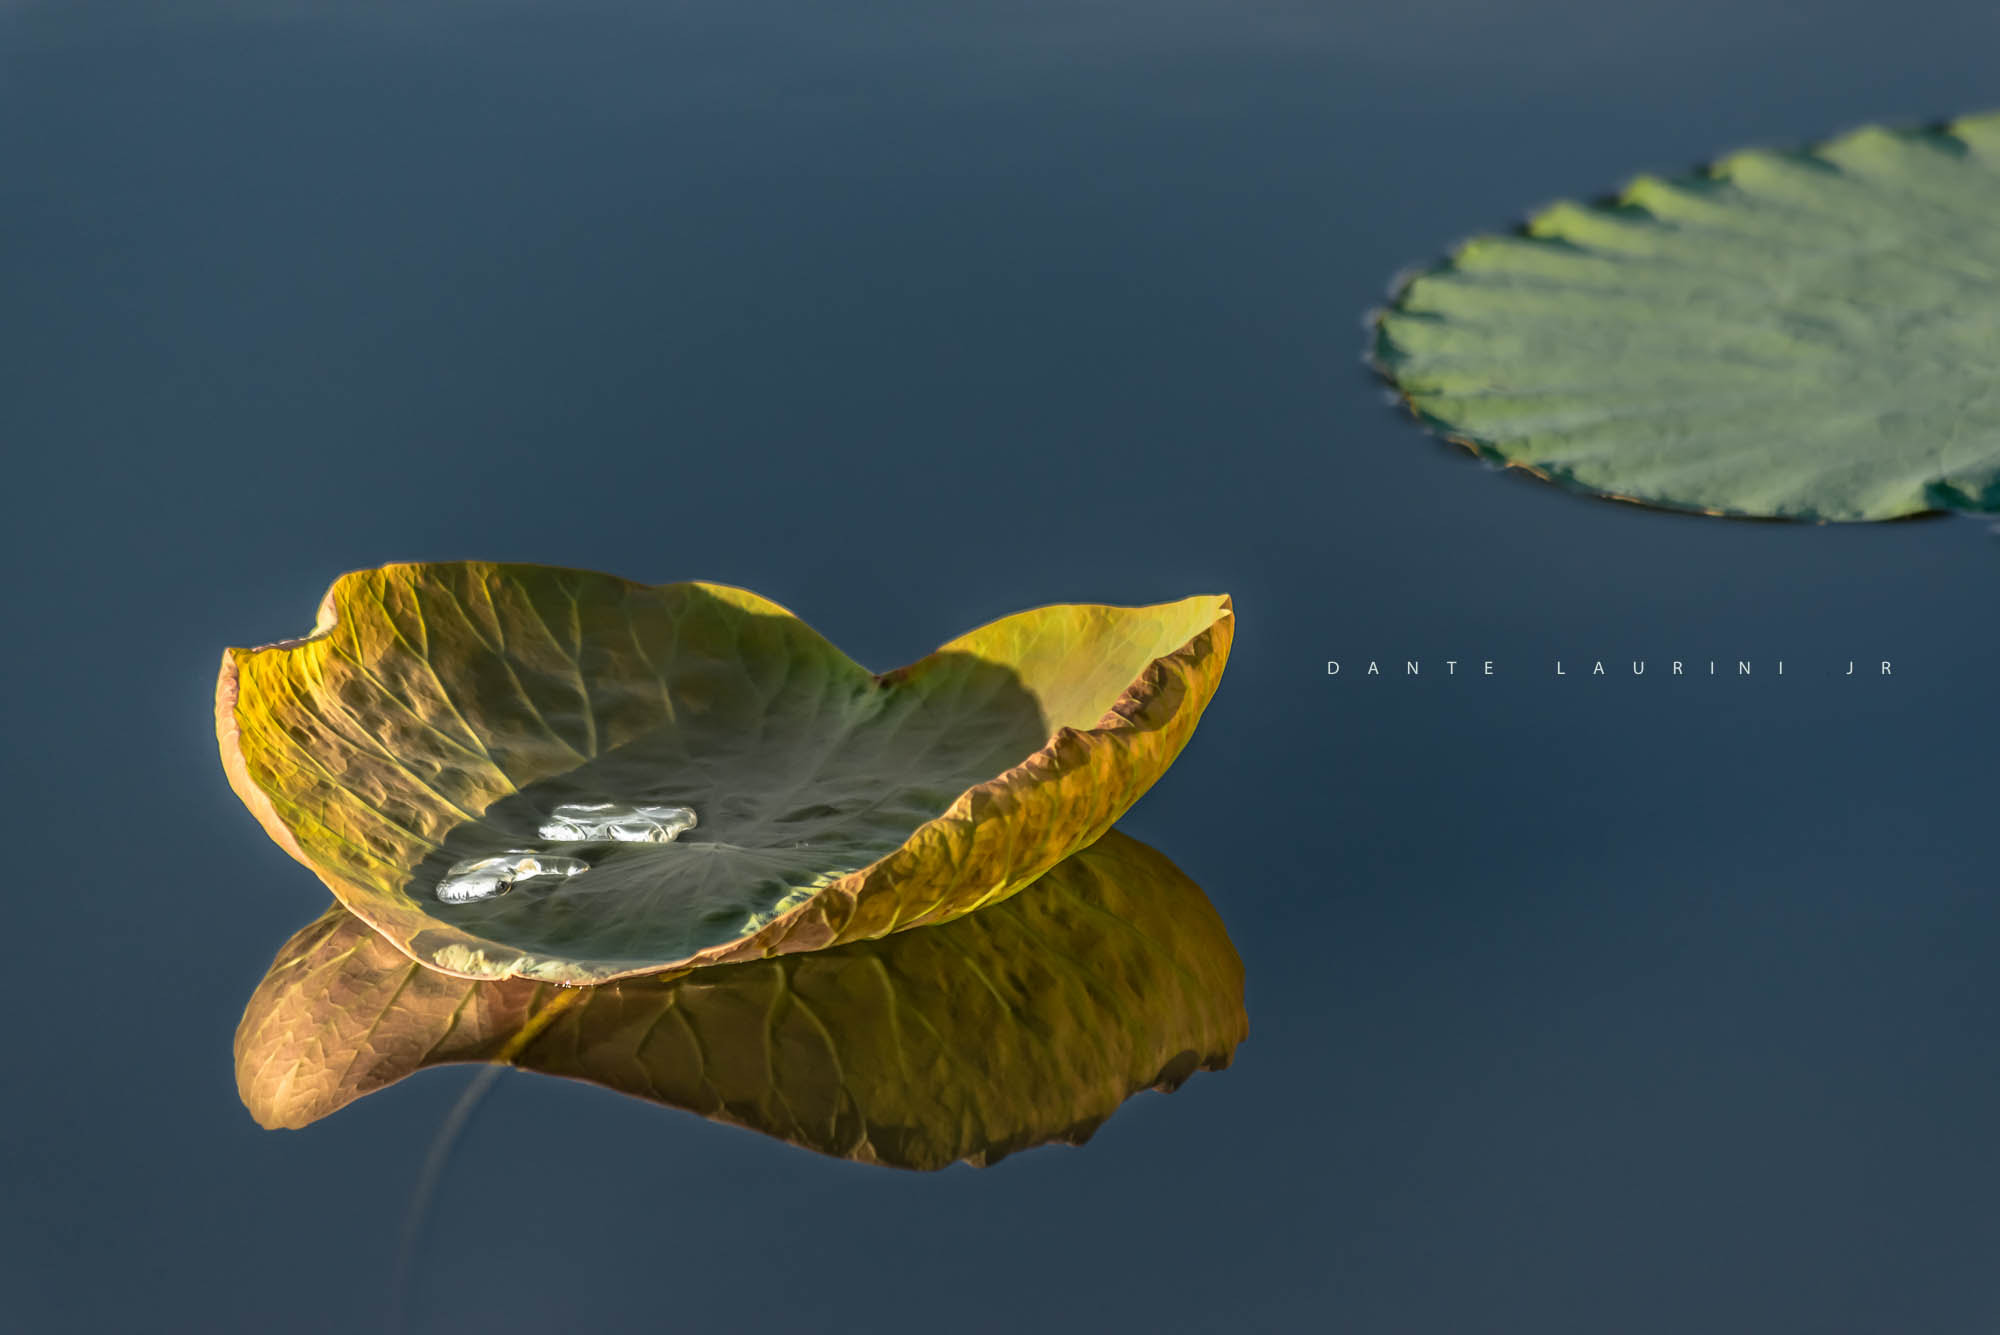 Nikon D800 + Sigma 70-300mm F4-5.6 APO DG Macro sample photo. Water lily | vitoria regia photography